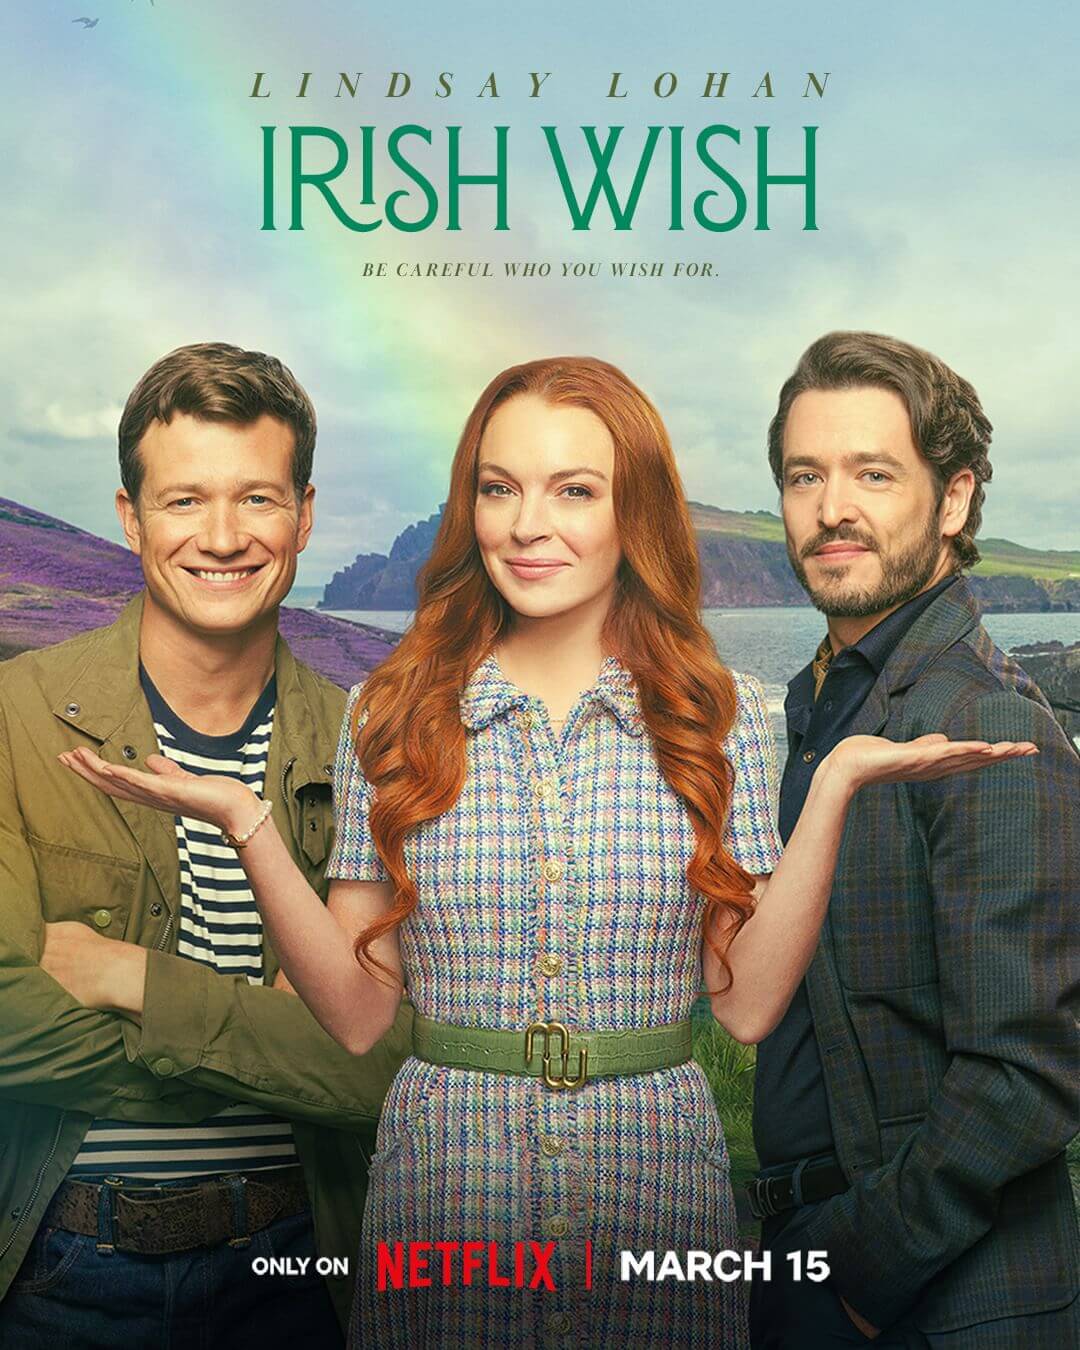 Irish Wish Movie Poster